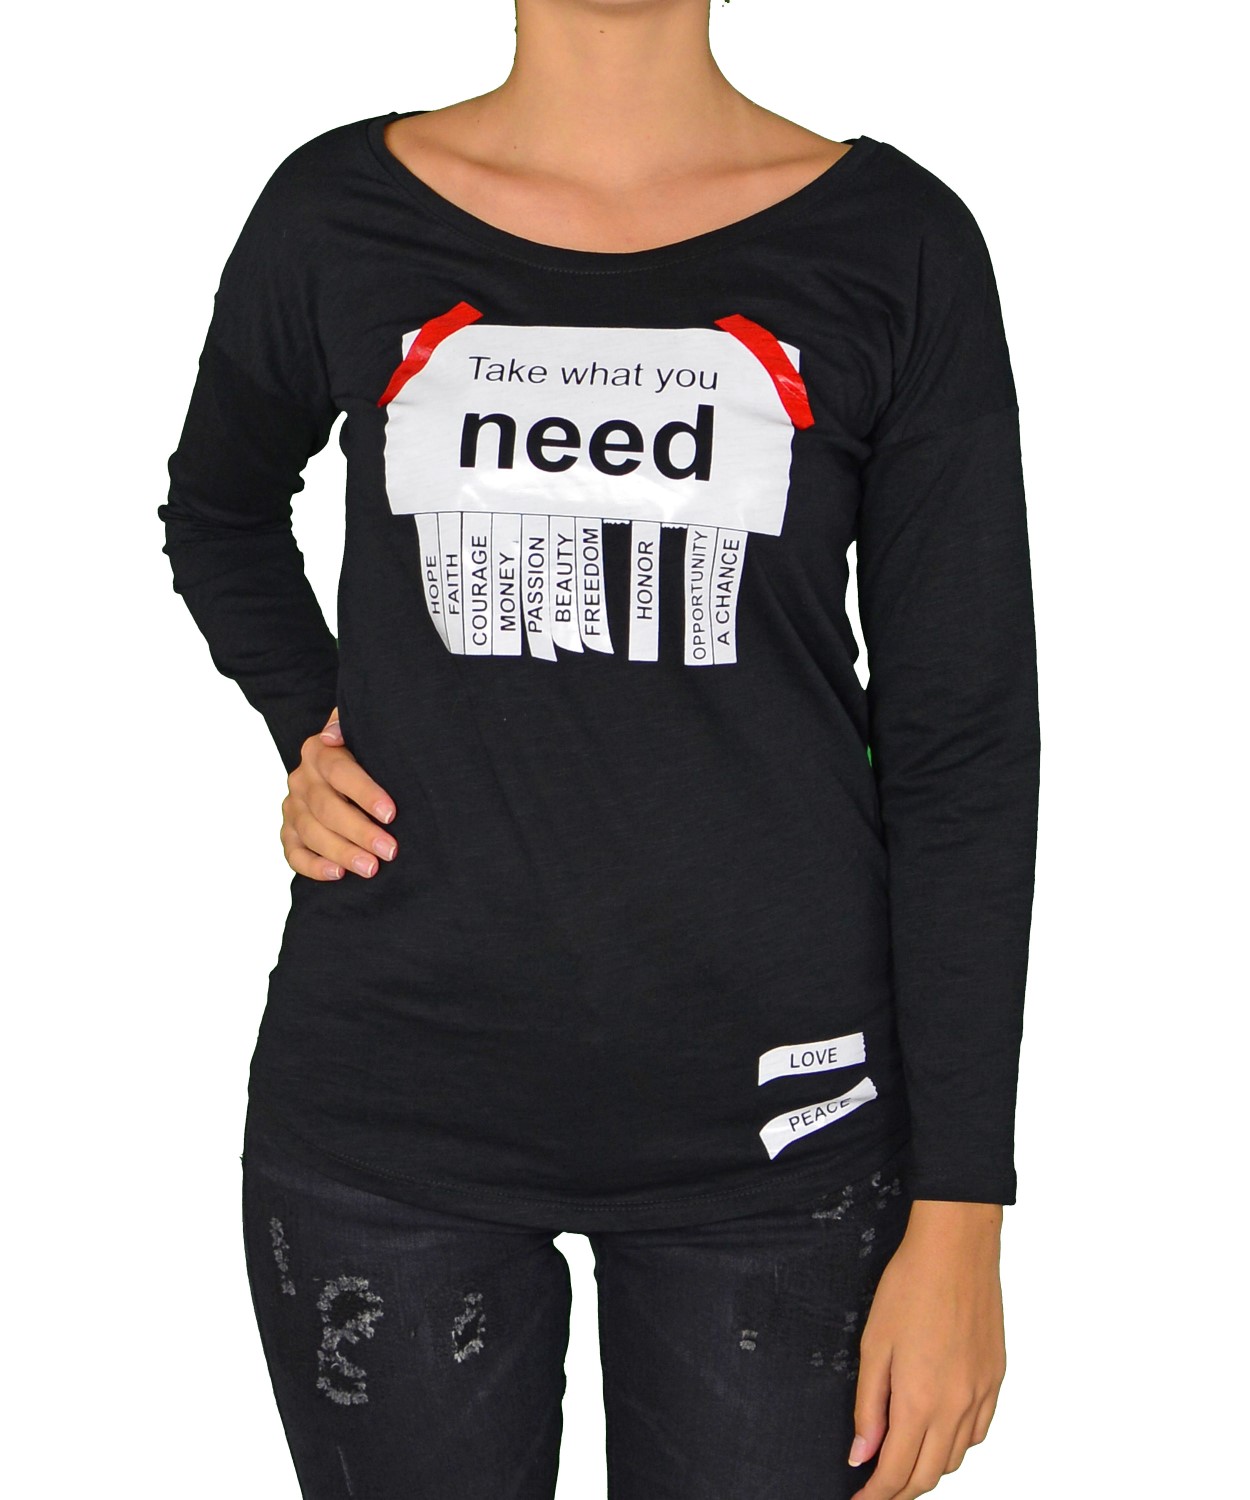 Γυναικεία μακρυμάνικη μπλούζα μαύρη με τύπωμα 280664